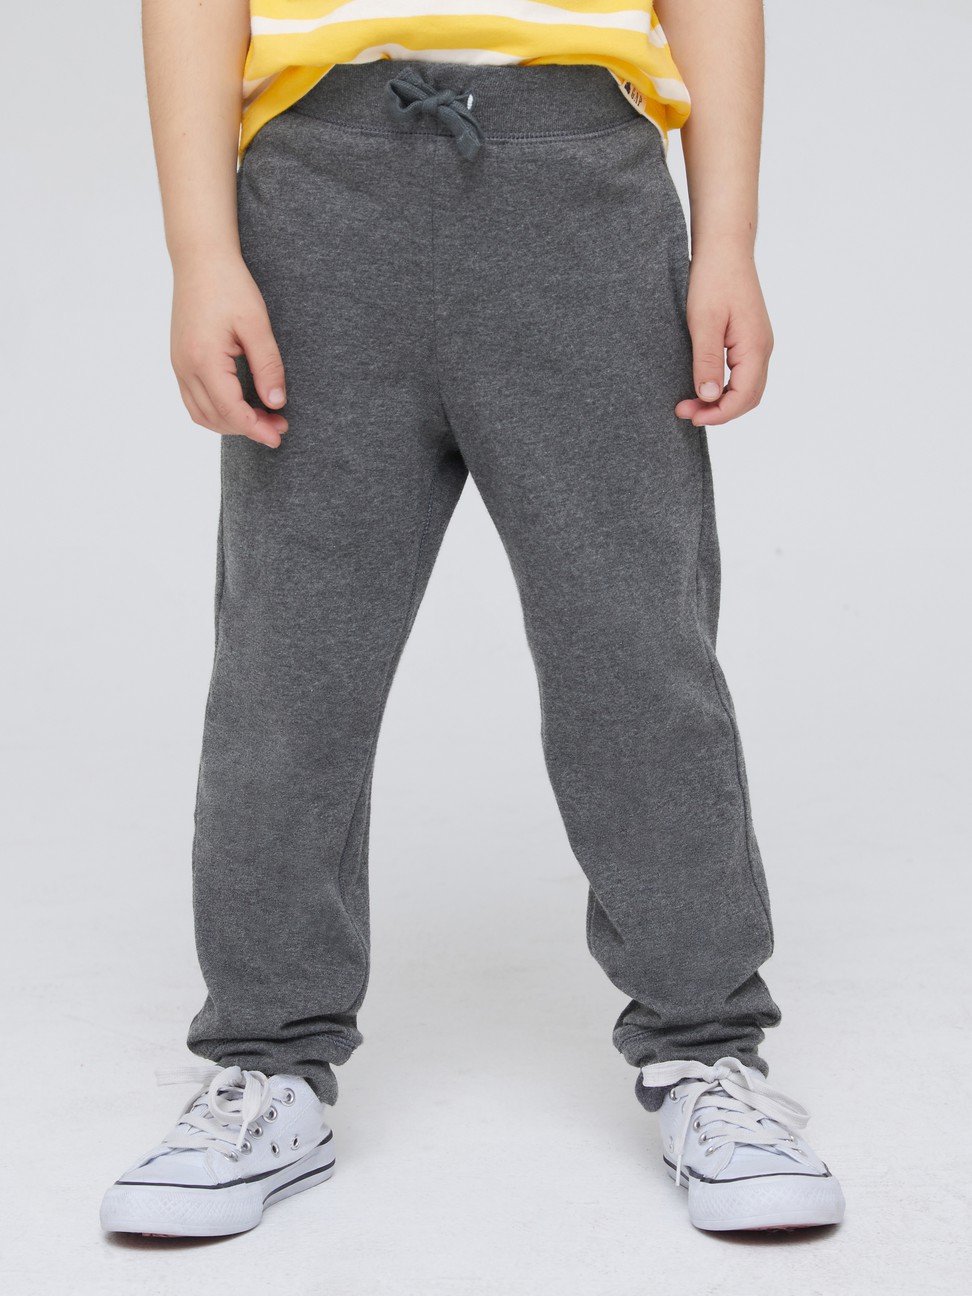 男幼童裝|純棉運動褲 布萊納系列-碳灰色